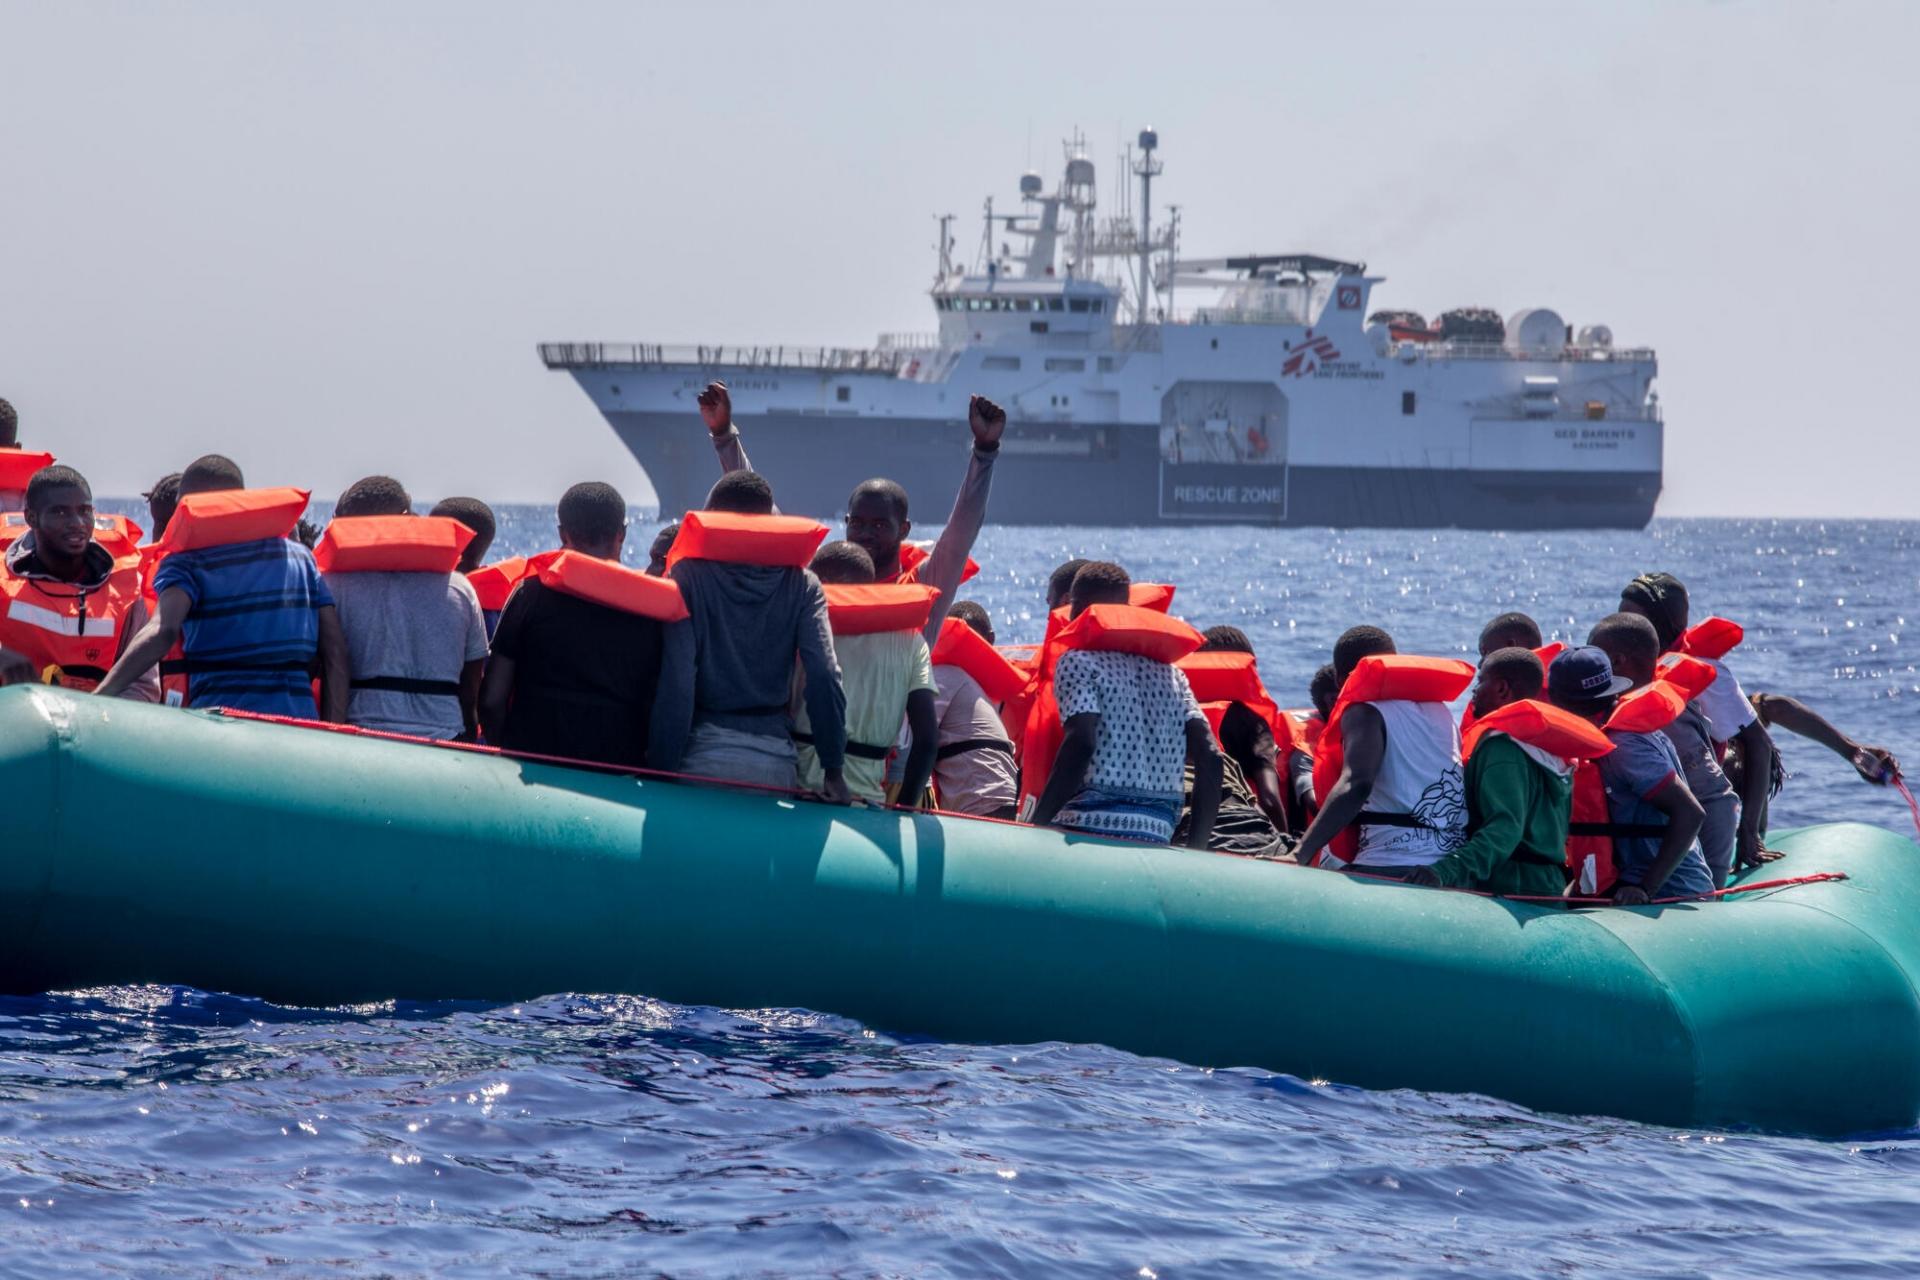 Les équipes MSF en approche d'un bateau avec 54 personnes à son bord, notamment 6 femmes, 21 mineurs non accompagnés et un bébé.